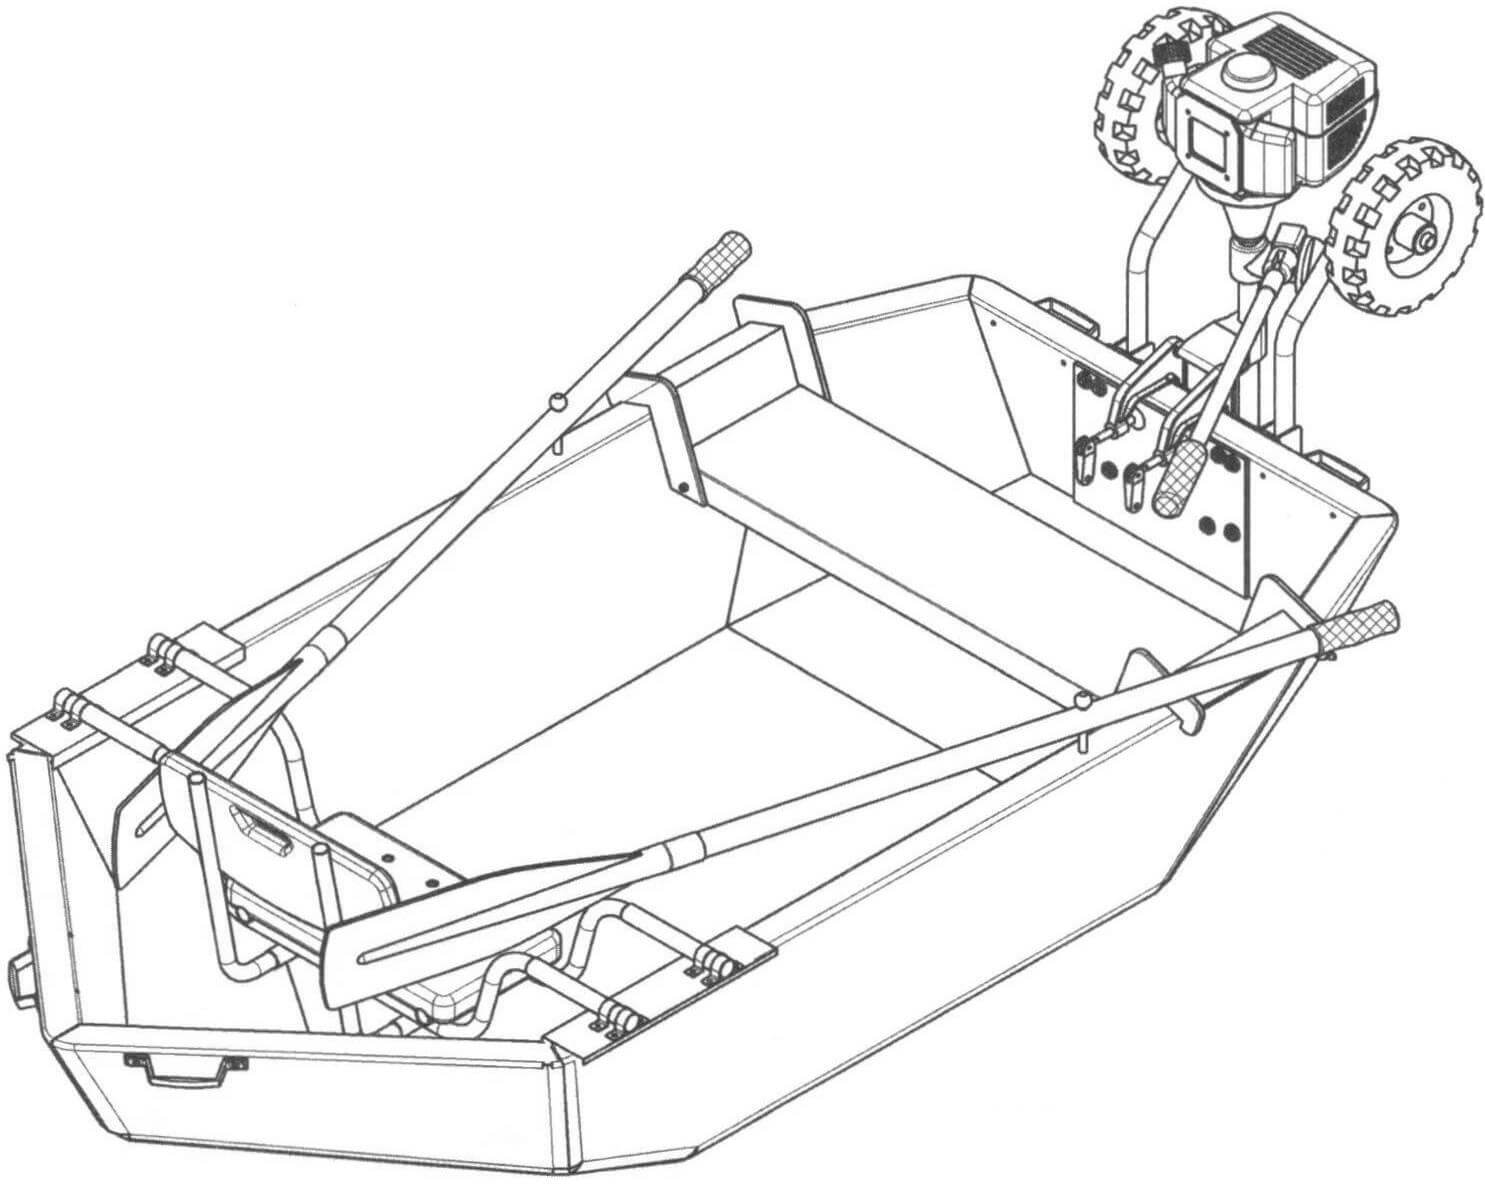 Общий вид лодки в полной комплектации с банками для двух пассажиров, мотором и транцевыми колесами в поднятом положении